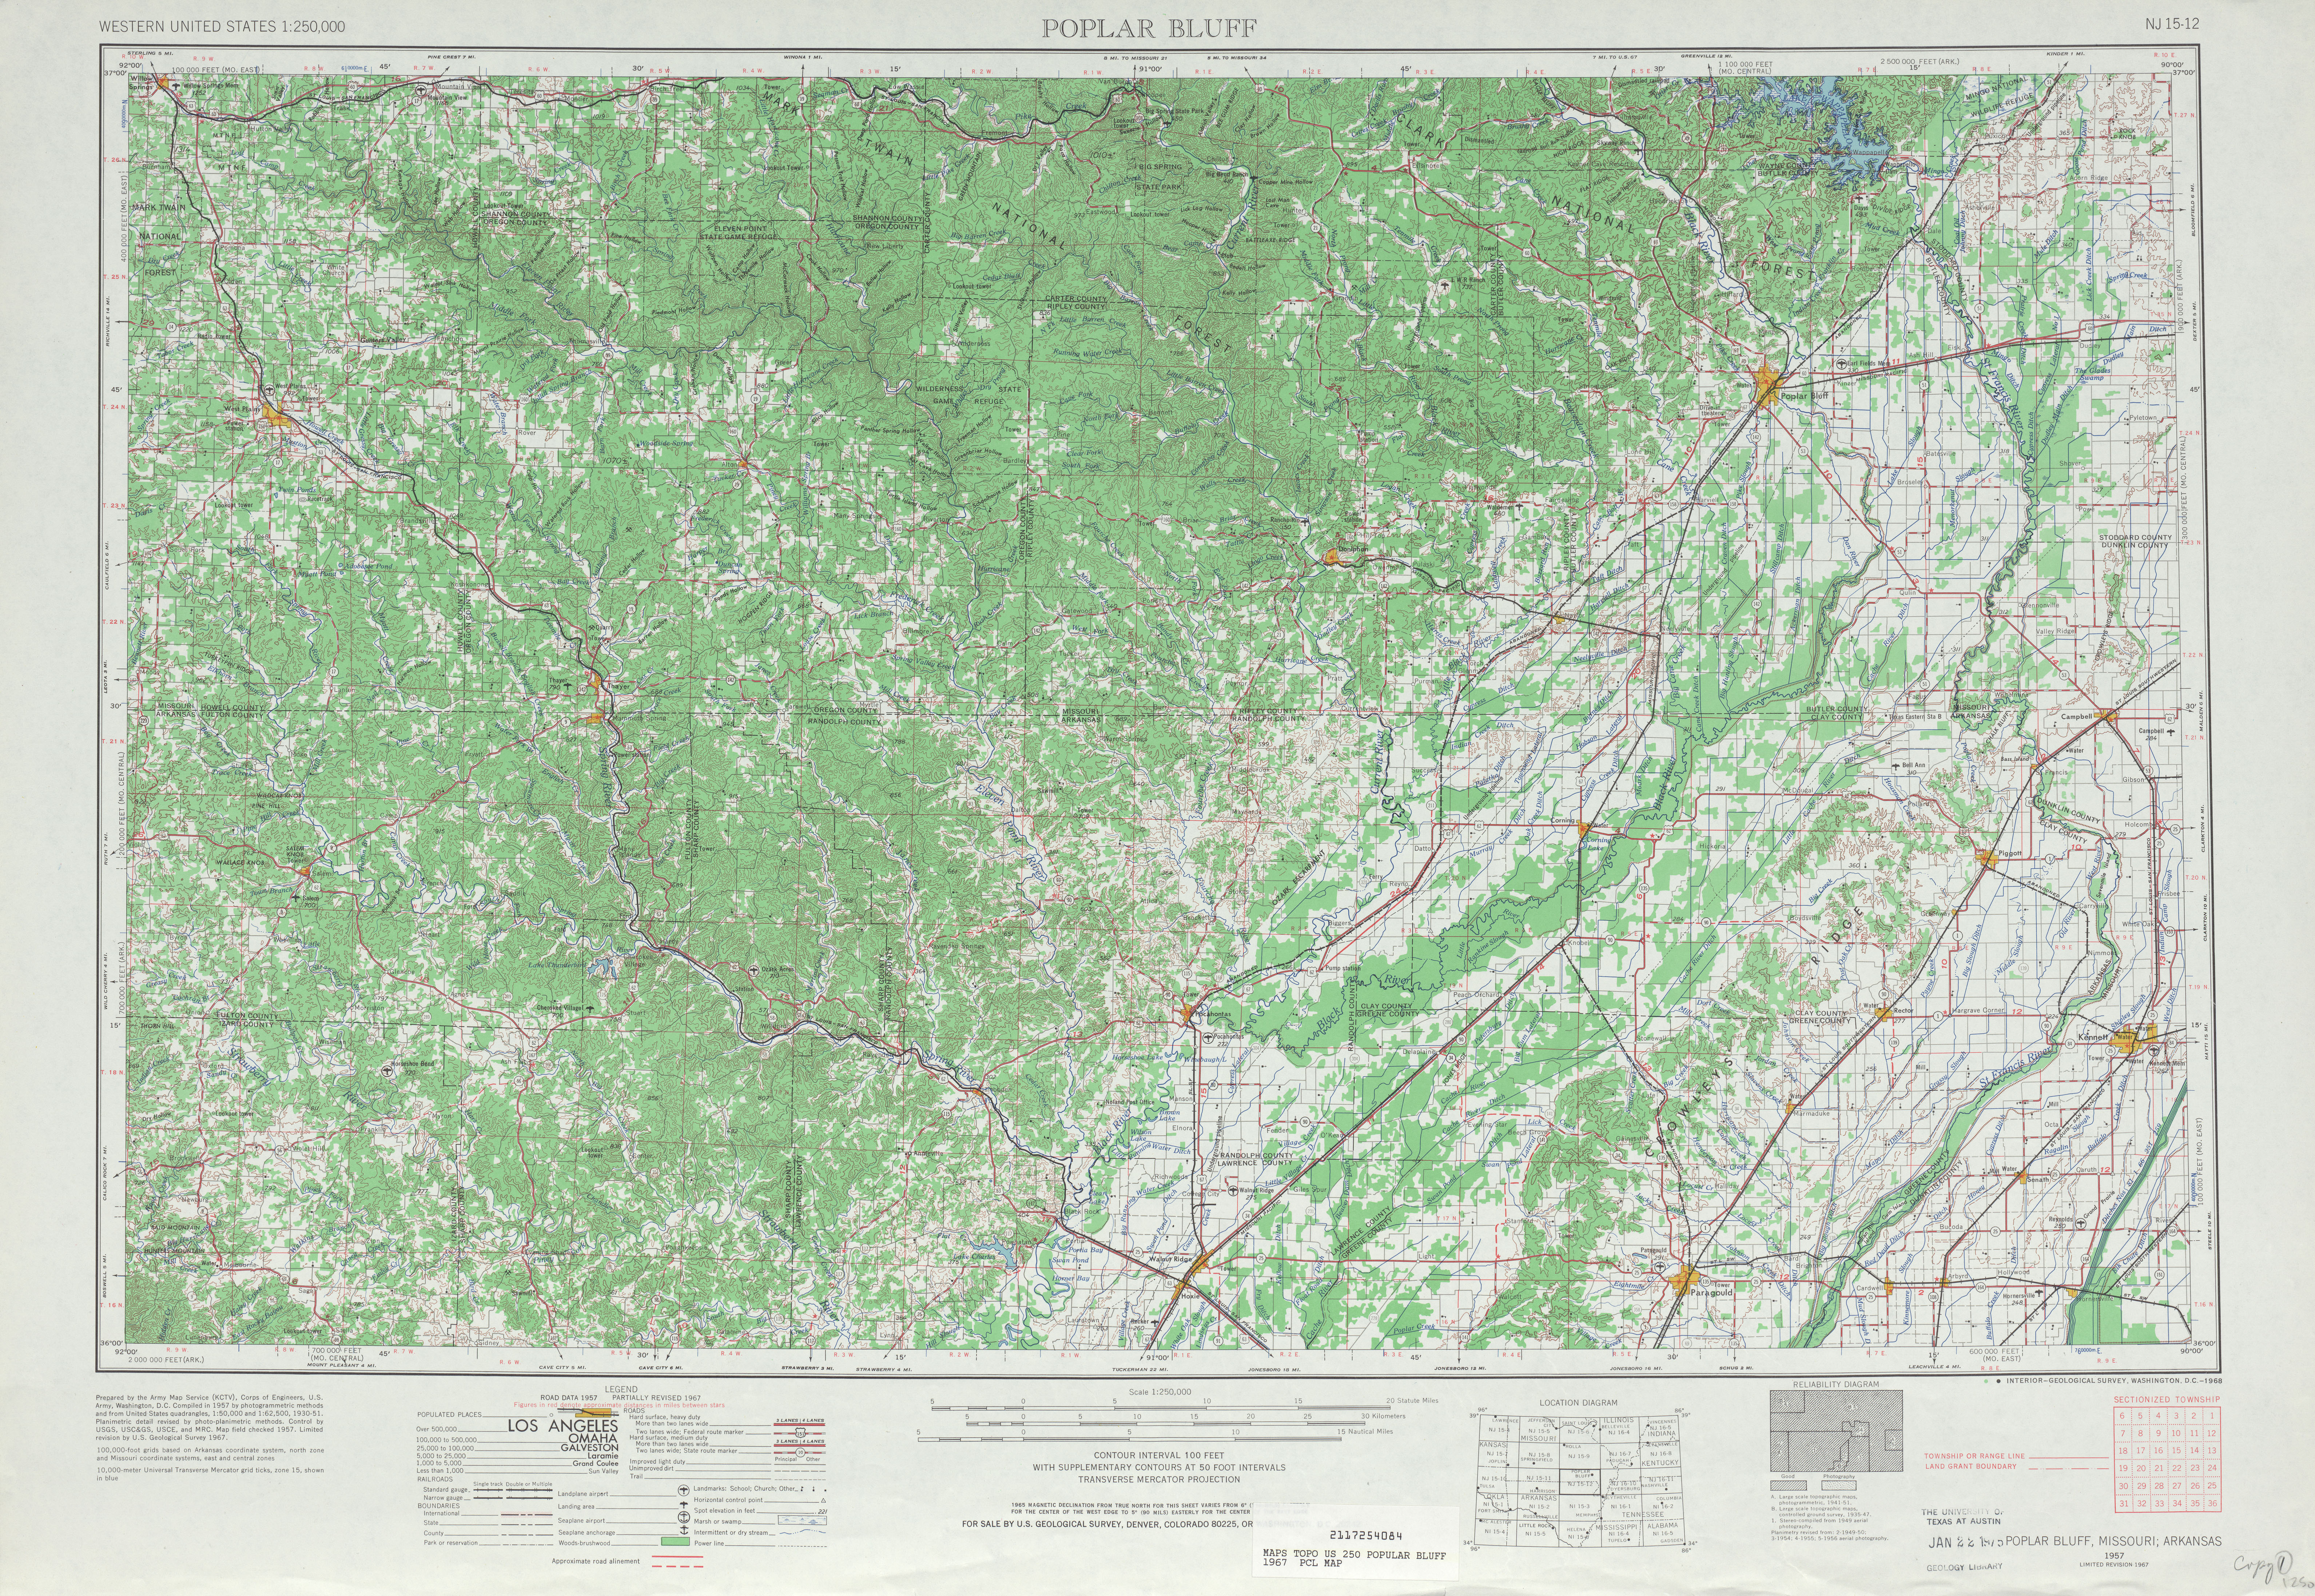 Hoja Poplar Bluff del Mapa Topográfico de los Estados Unidos 1967